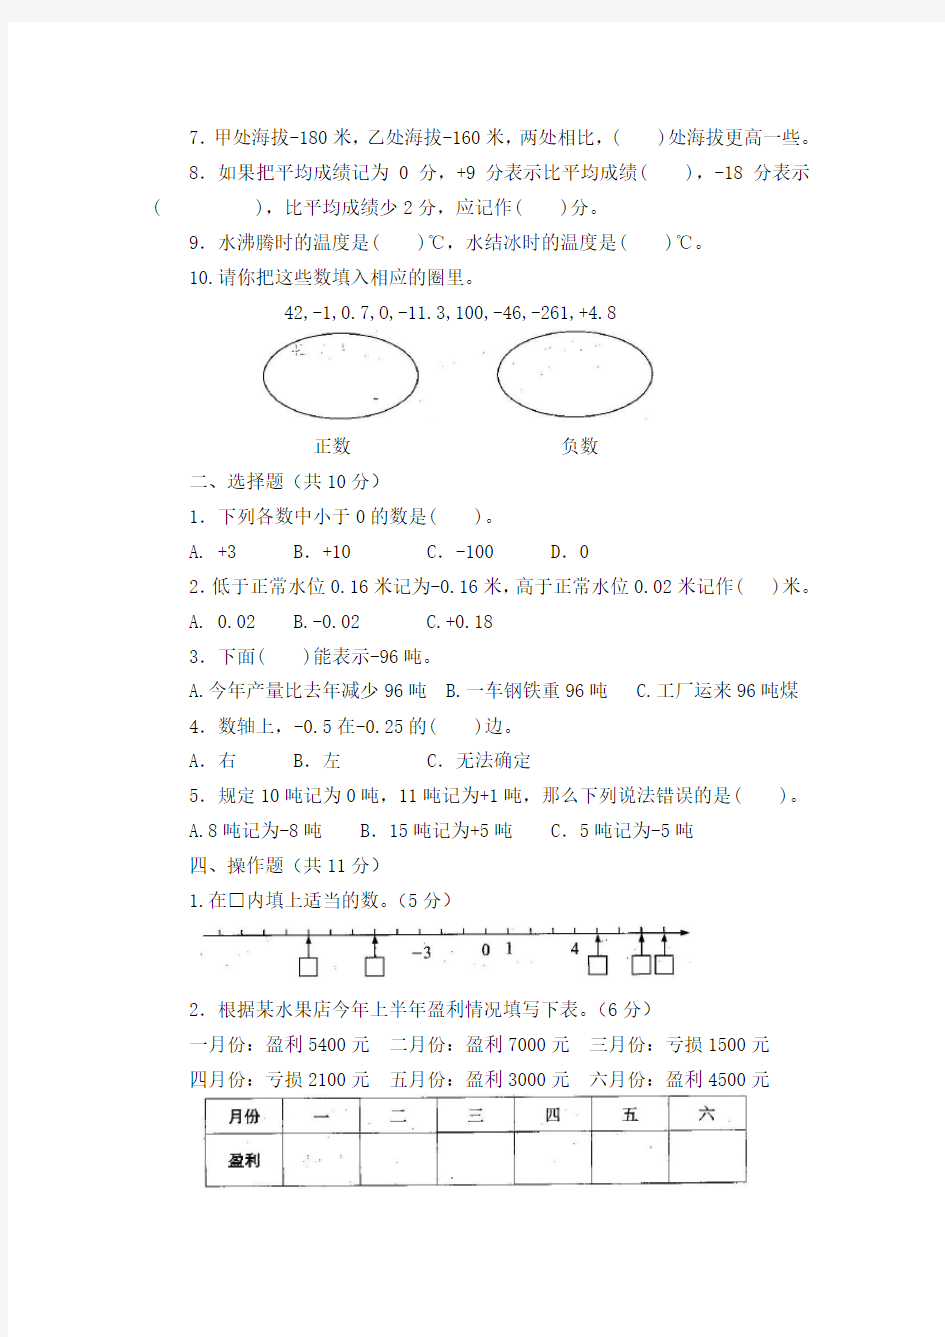 【新】苏教版5五年级上册数学学习能力检测卷(全套)【小学生数学报】